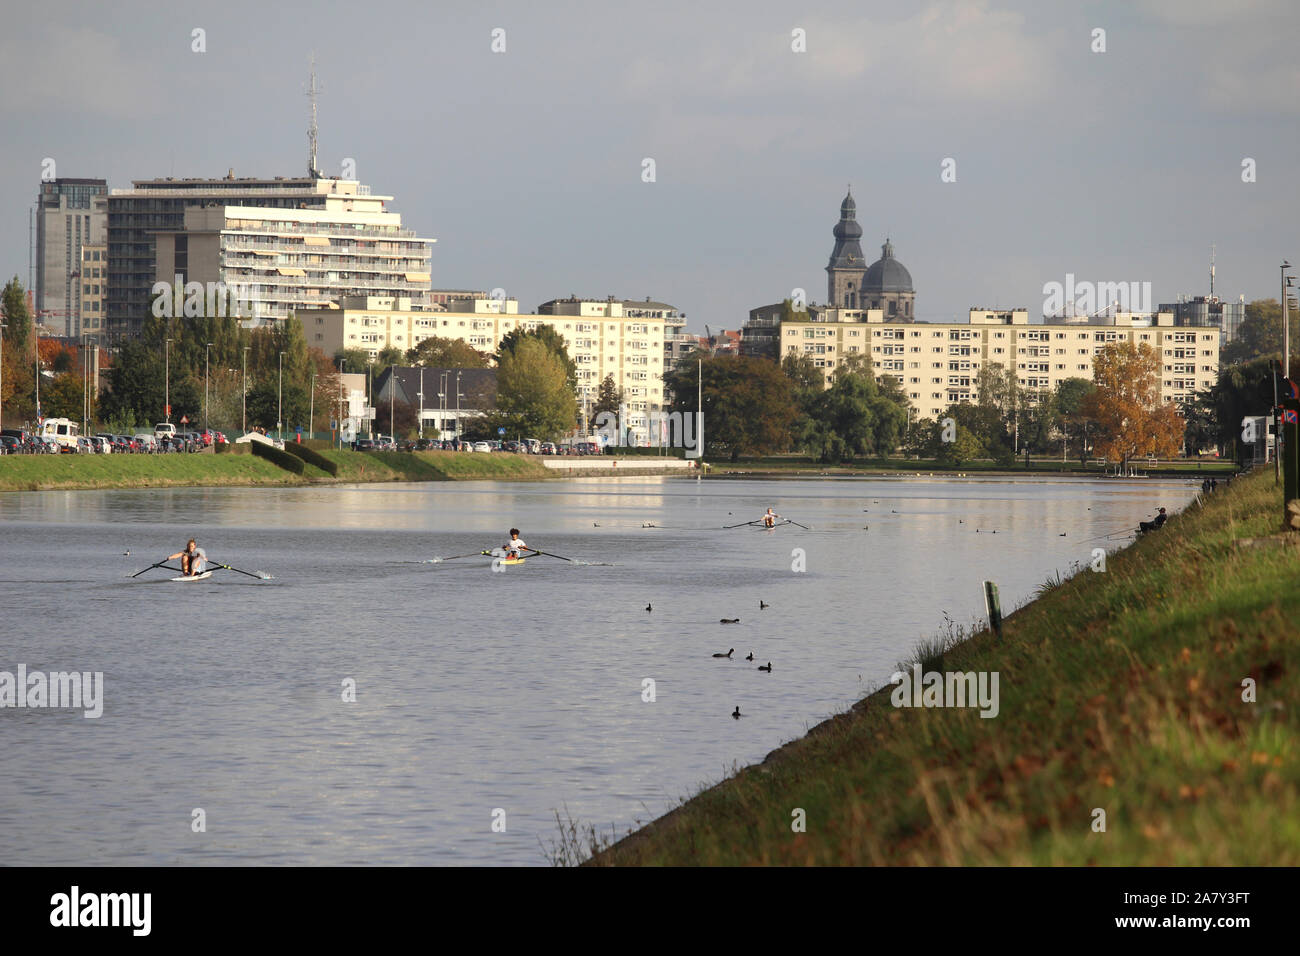 GENT, Belgio, 28 ottobre 2019: Vista di persone canottaggio sul "Blaarmeersen " lago nella città di Gent. Blaarmeersen è un importante sport e recreatio Foto Stock